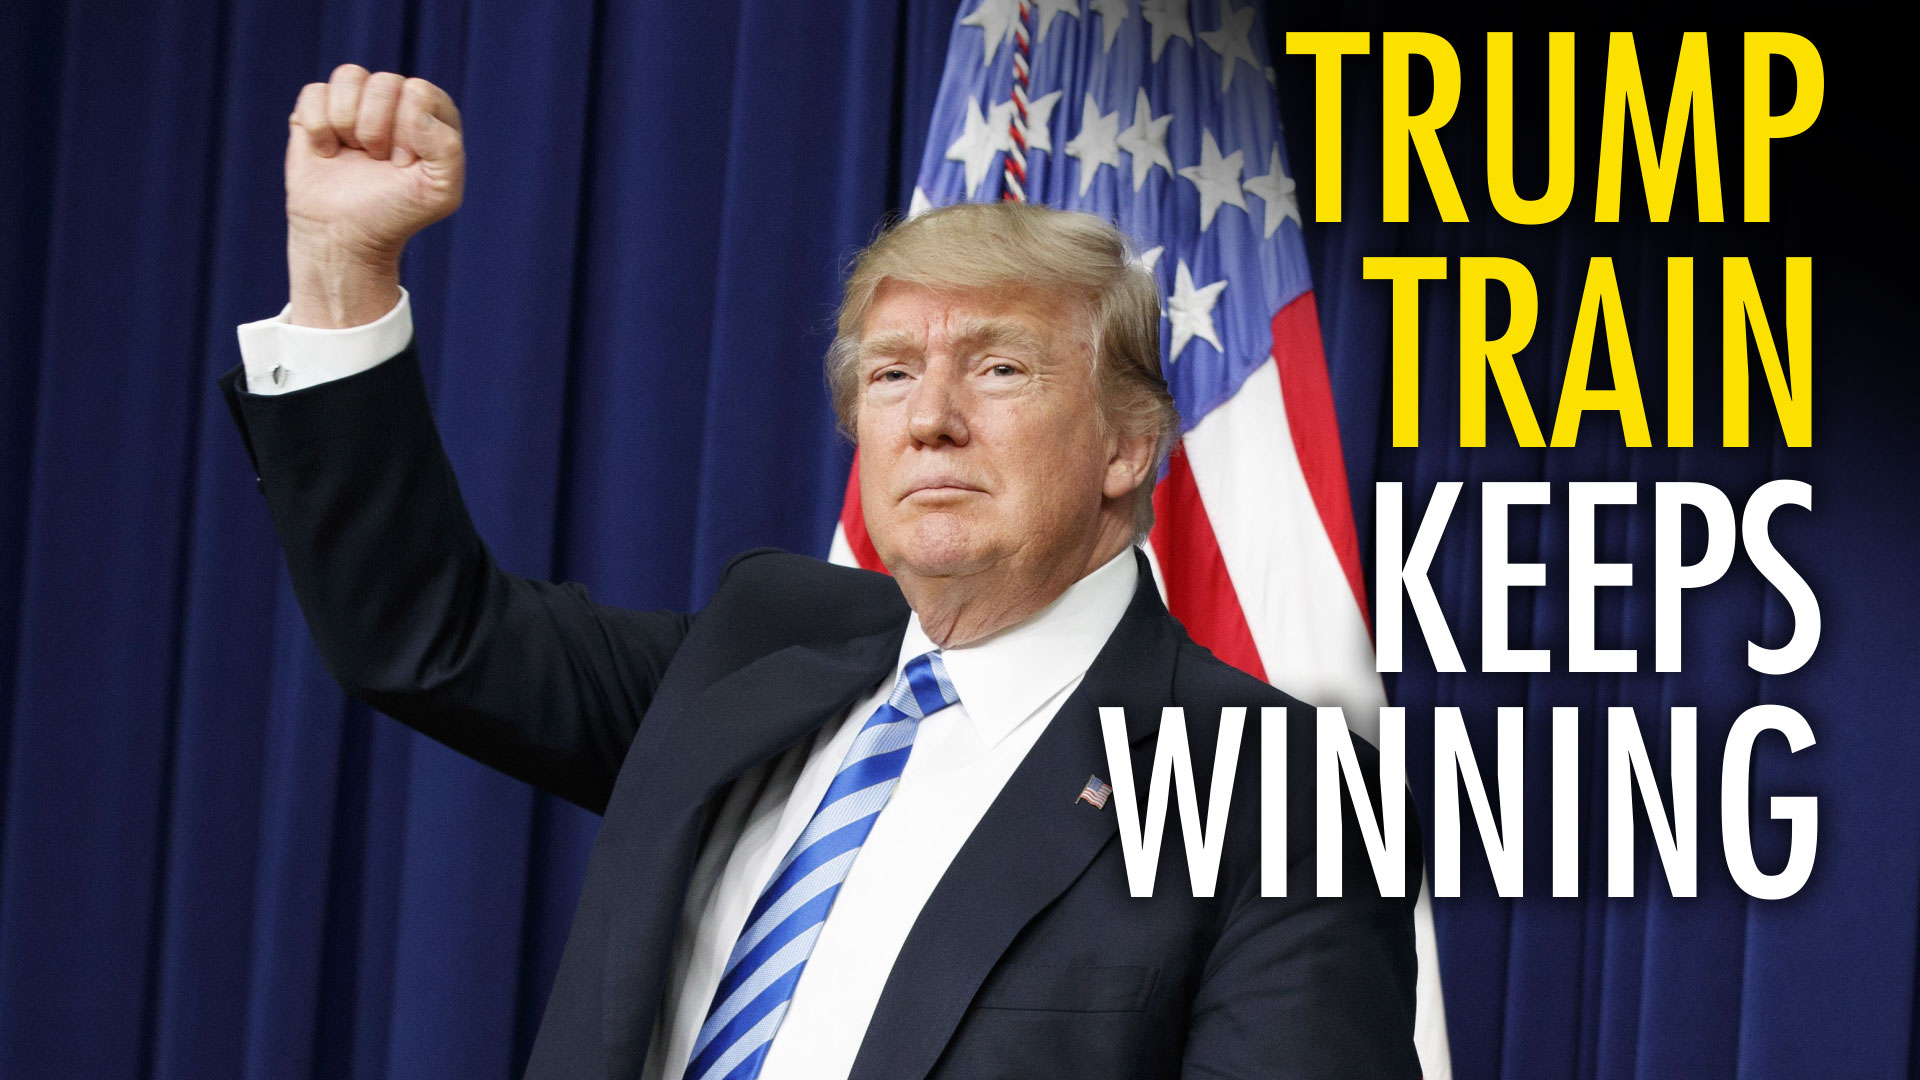 winning trump - Trump Train Keeps Winning